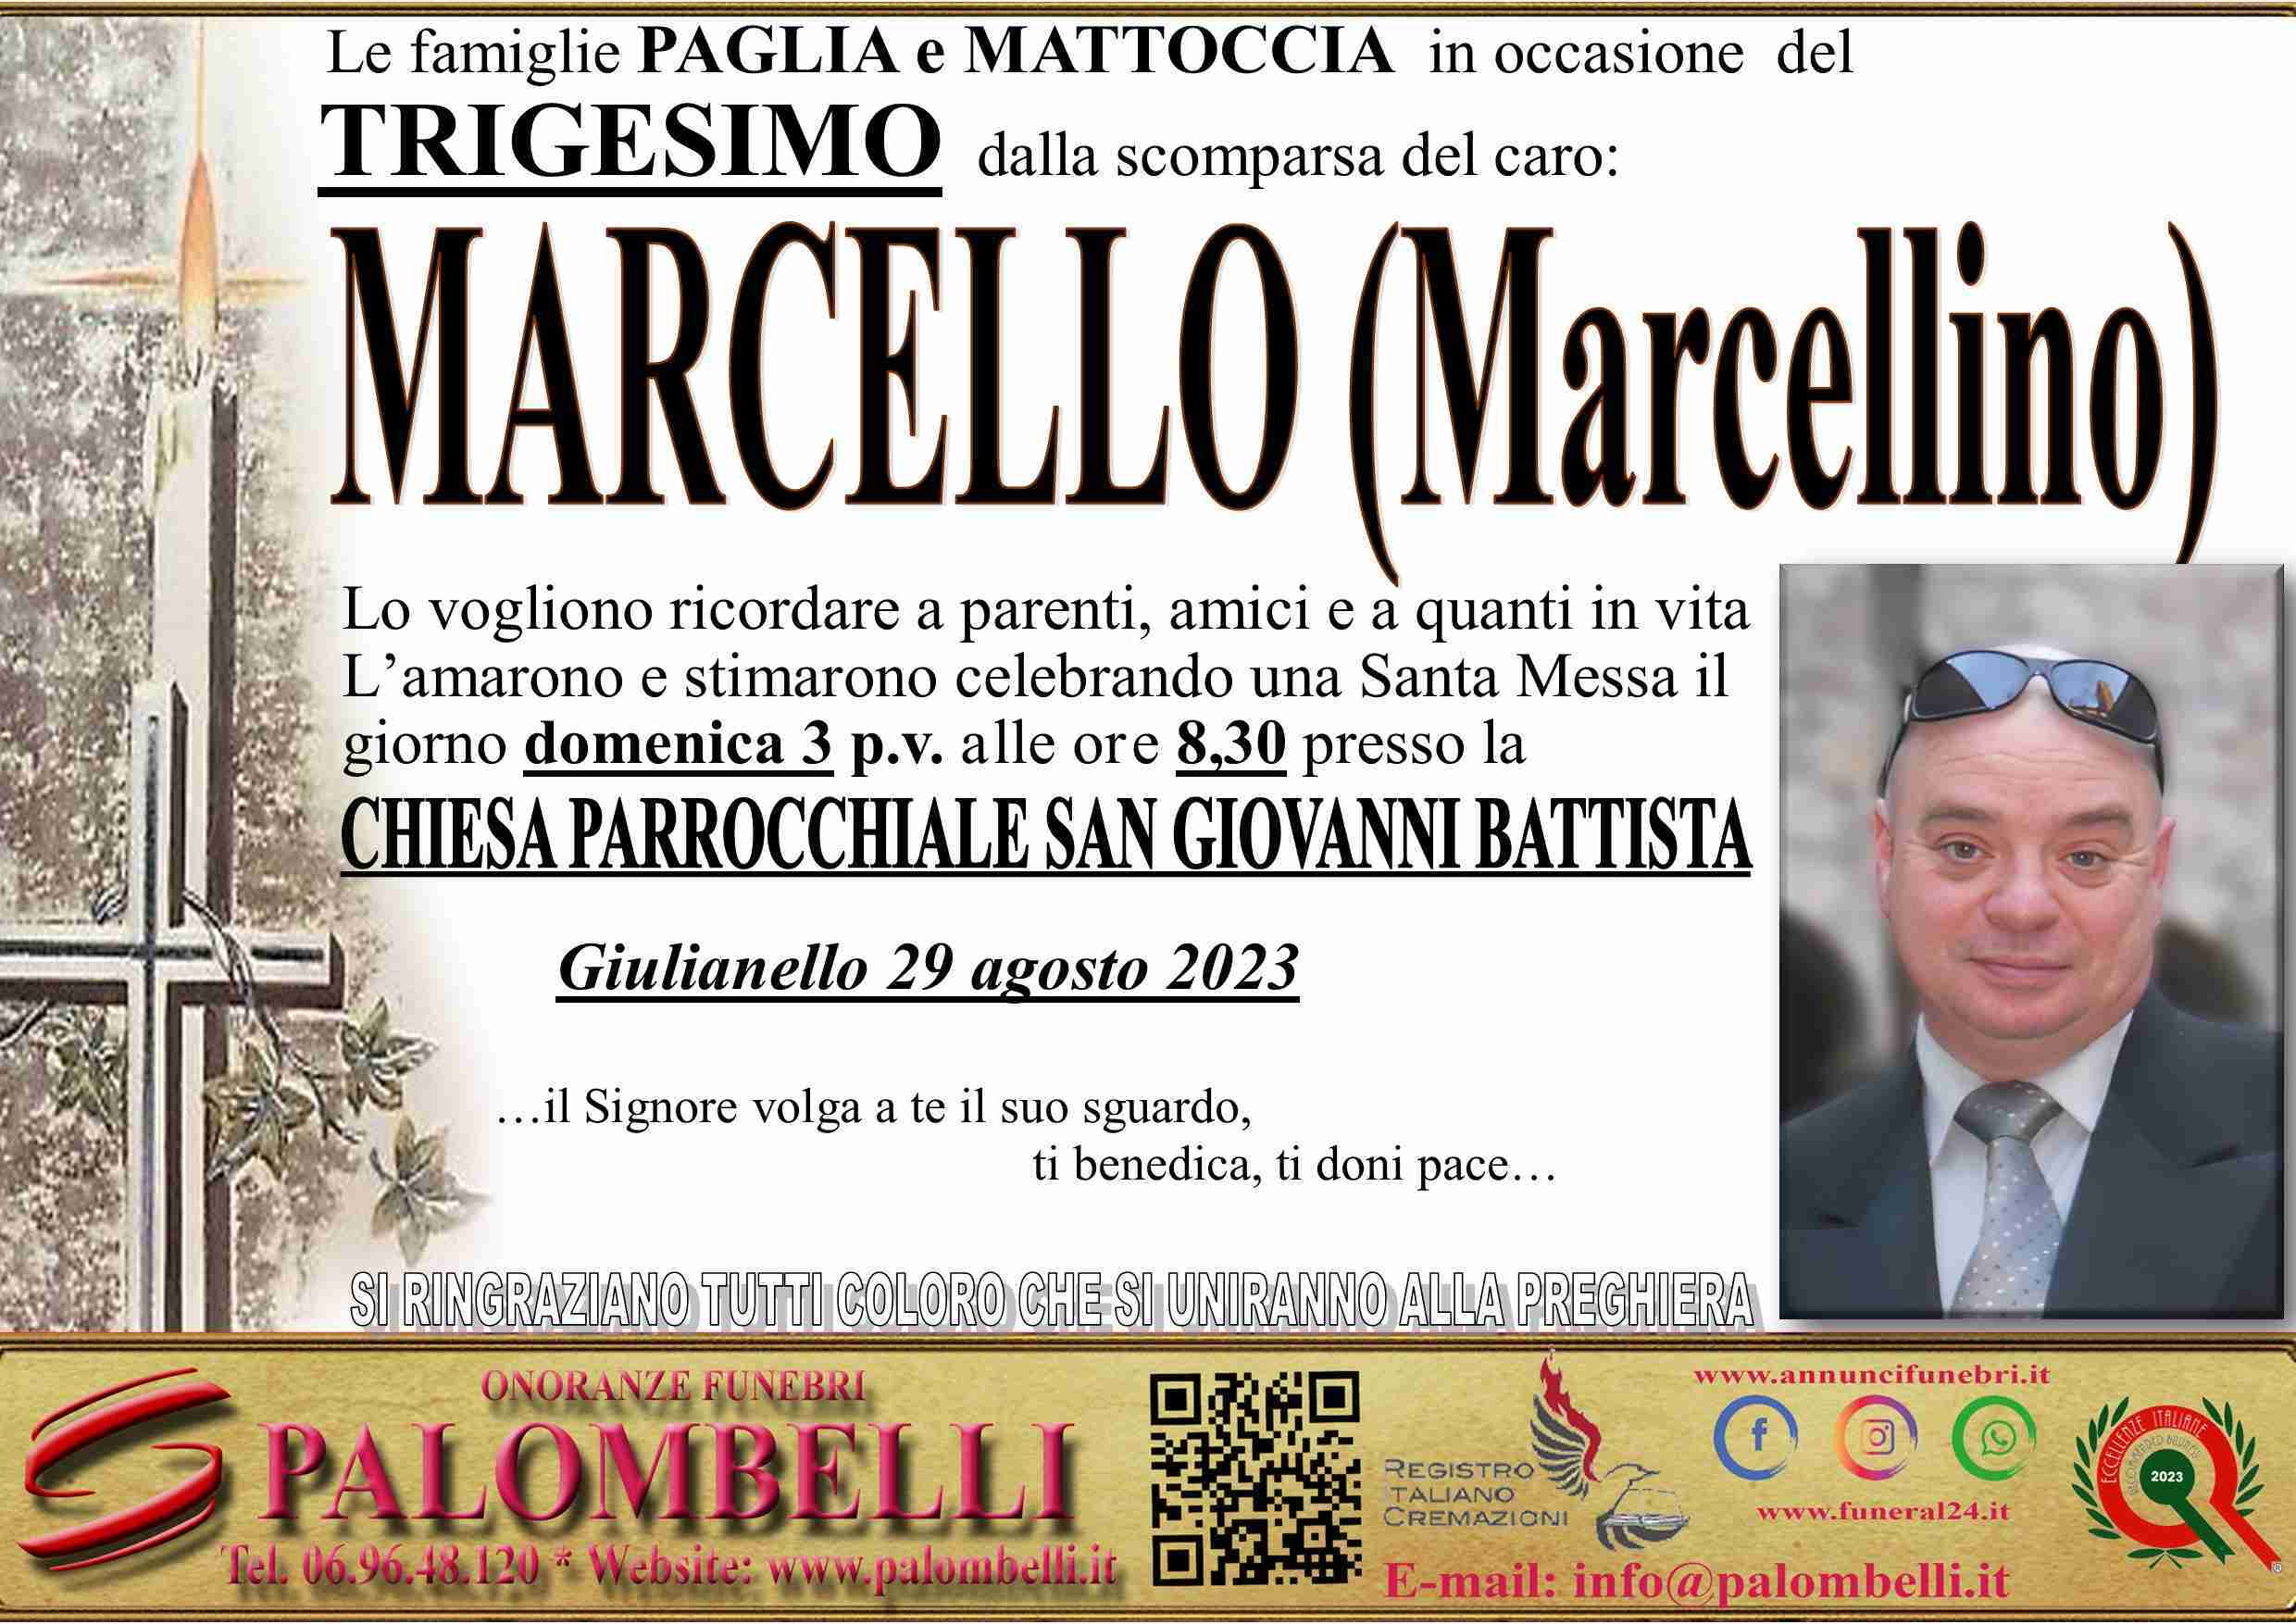 Marcello Mattoccia